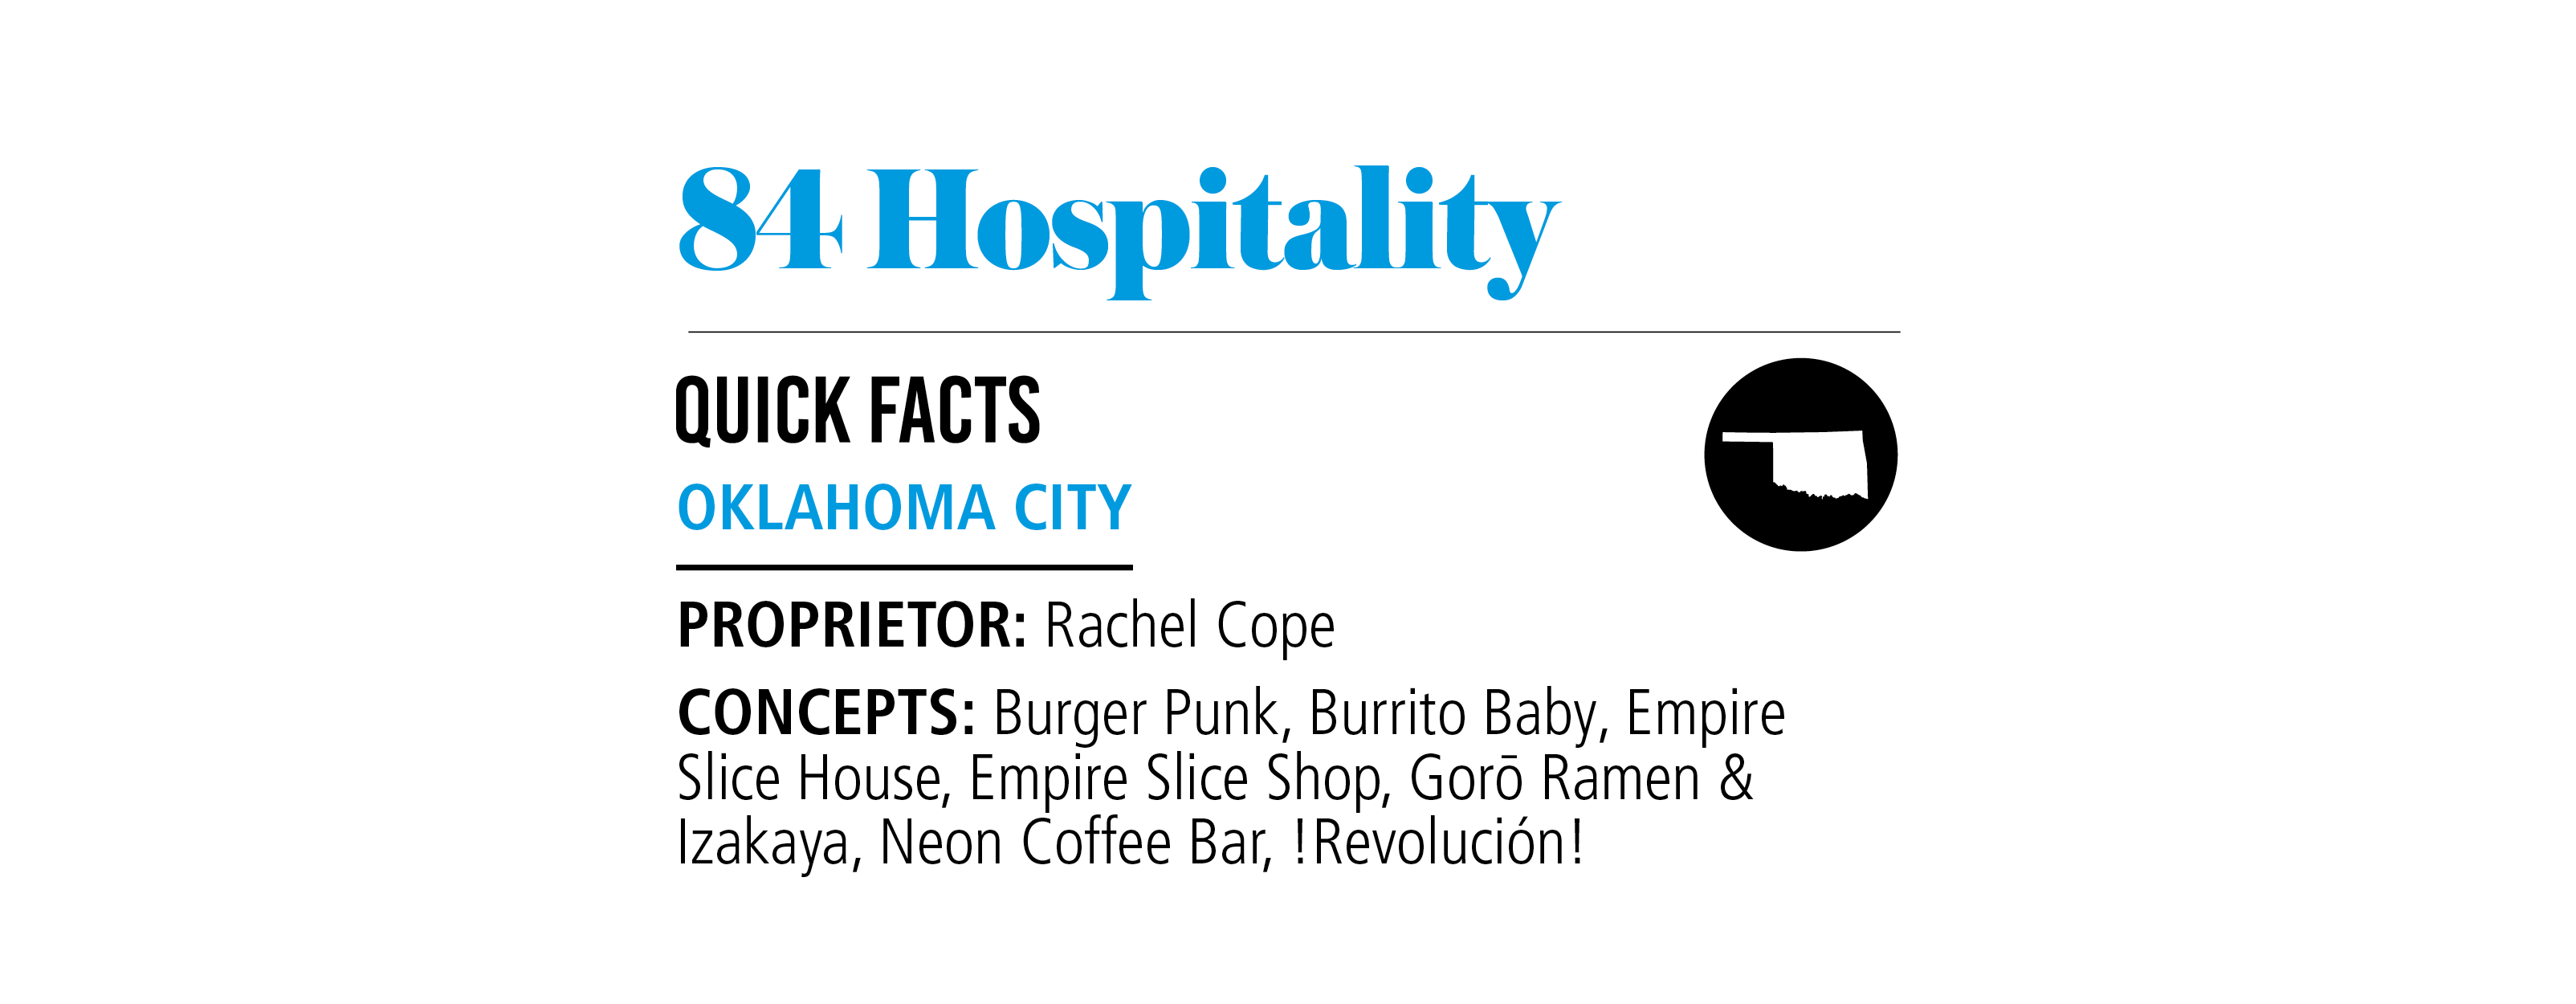 84 Hospitality fact box